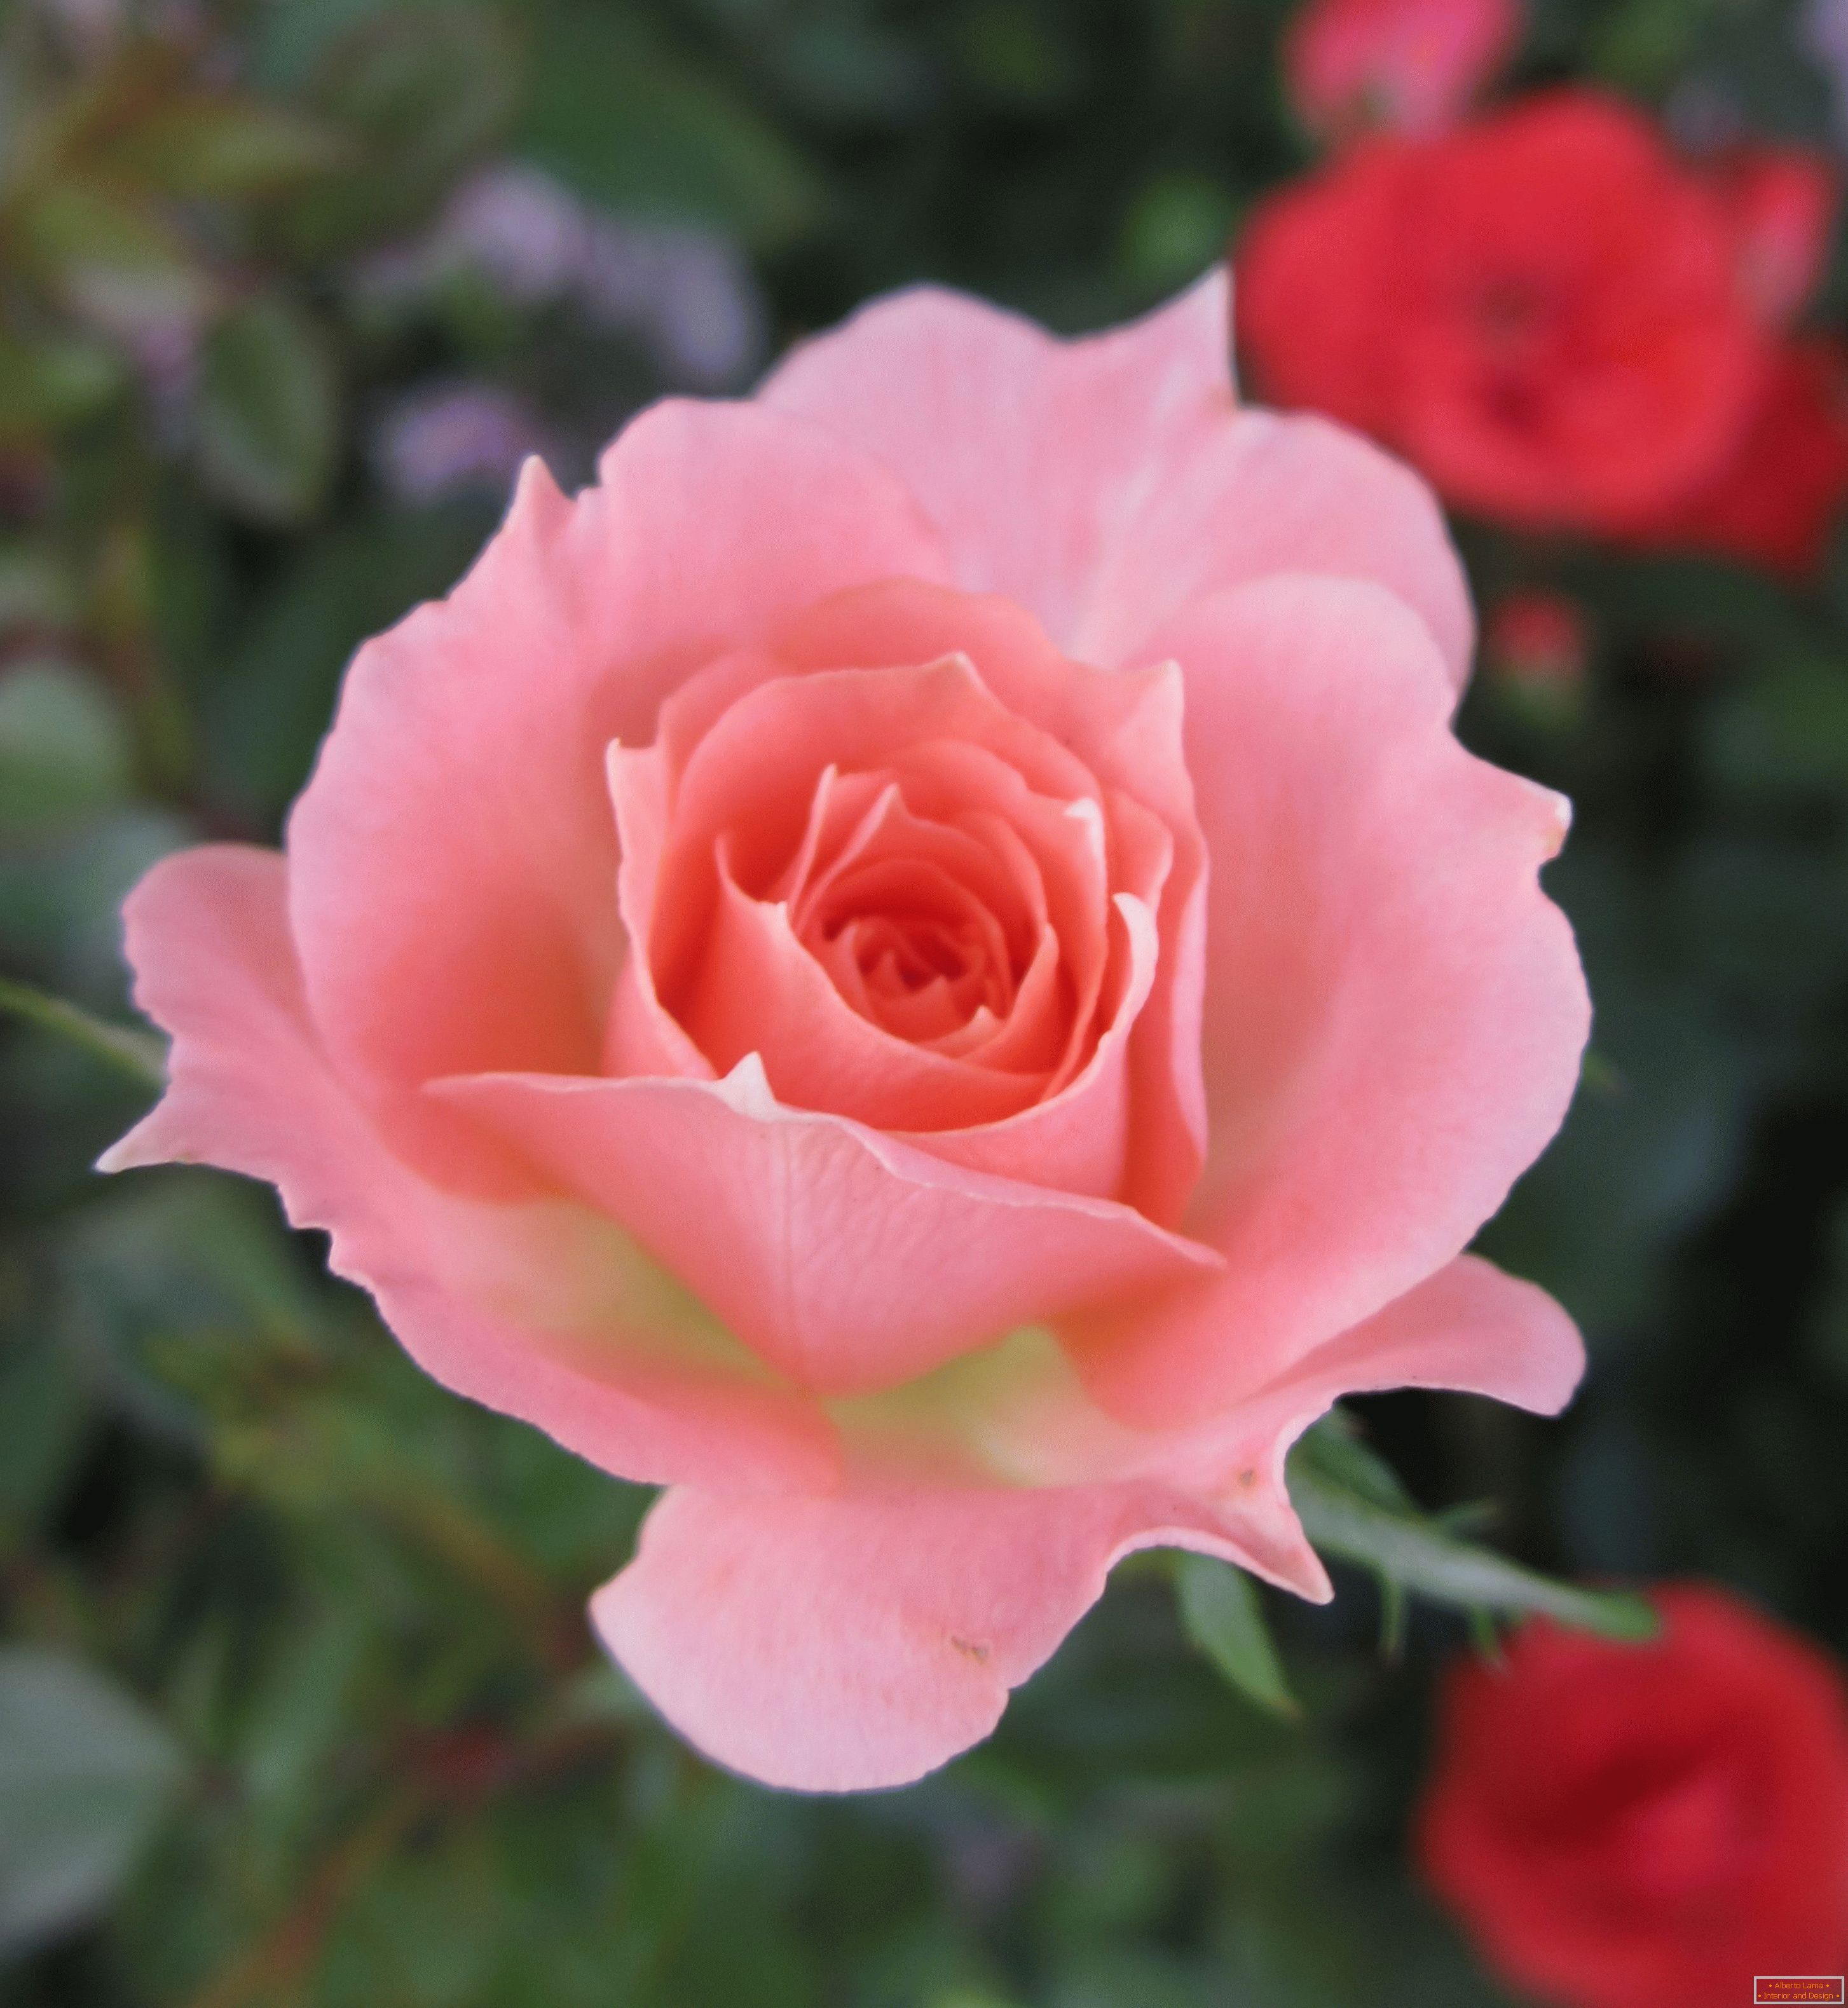 Rose roza odtenek v okolju rdečih cvetov